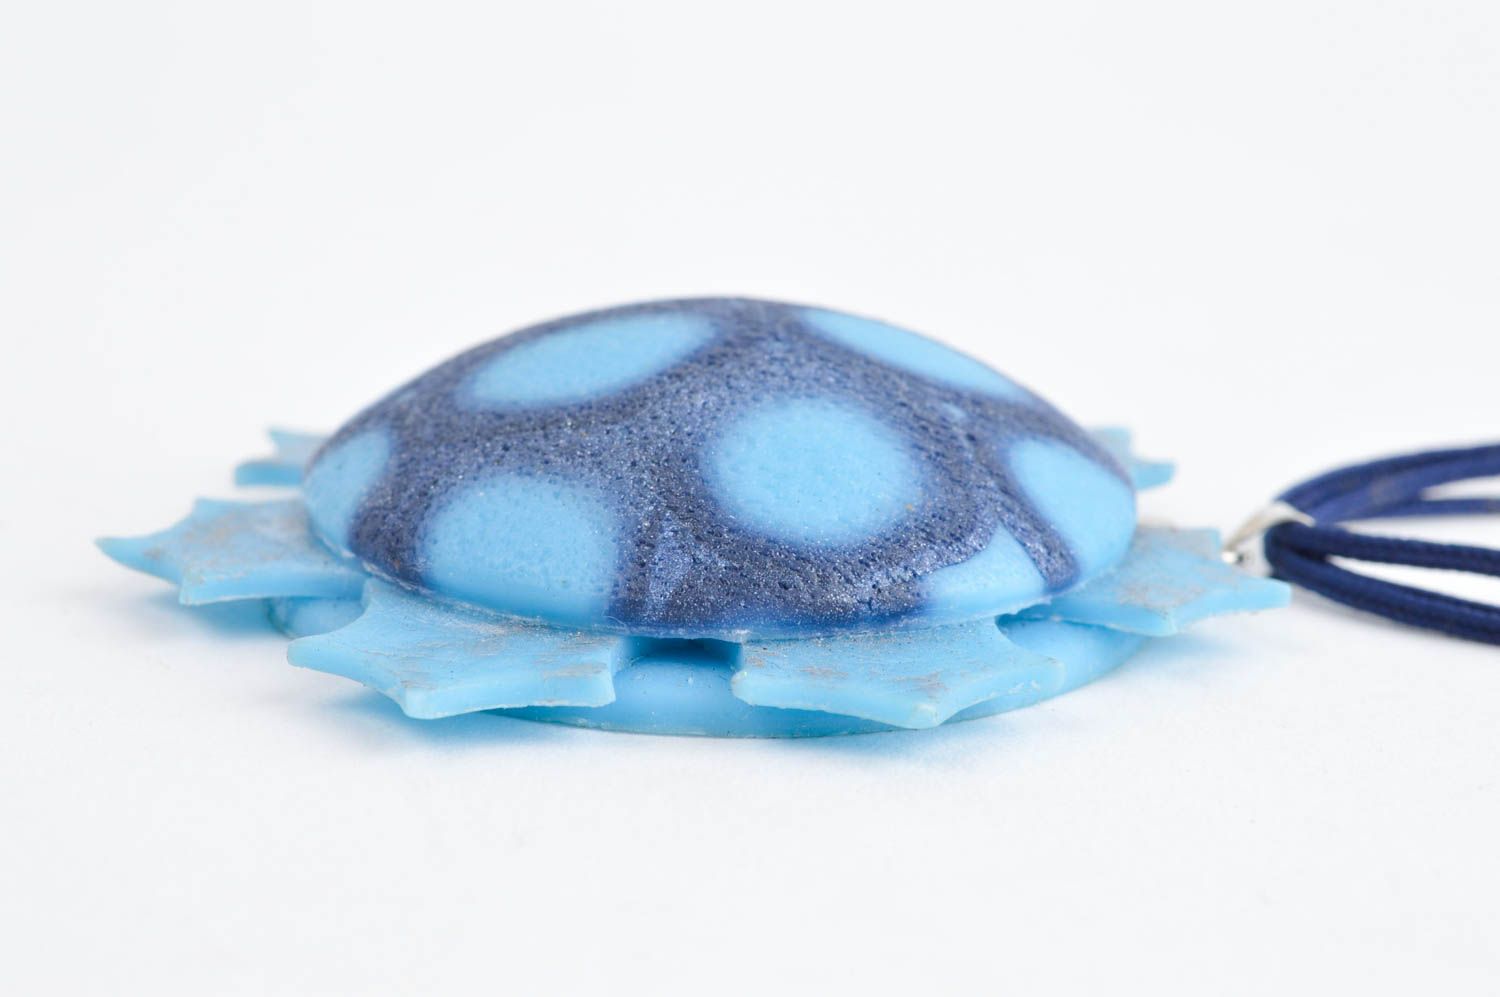 Украшение ручной работы подвеска из пластики голубая круглая модная бижутерия фото 2